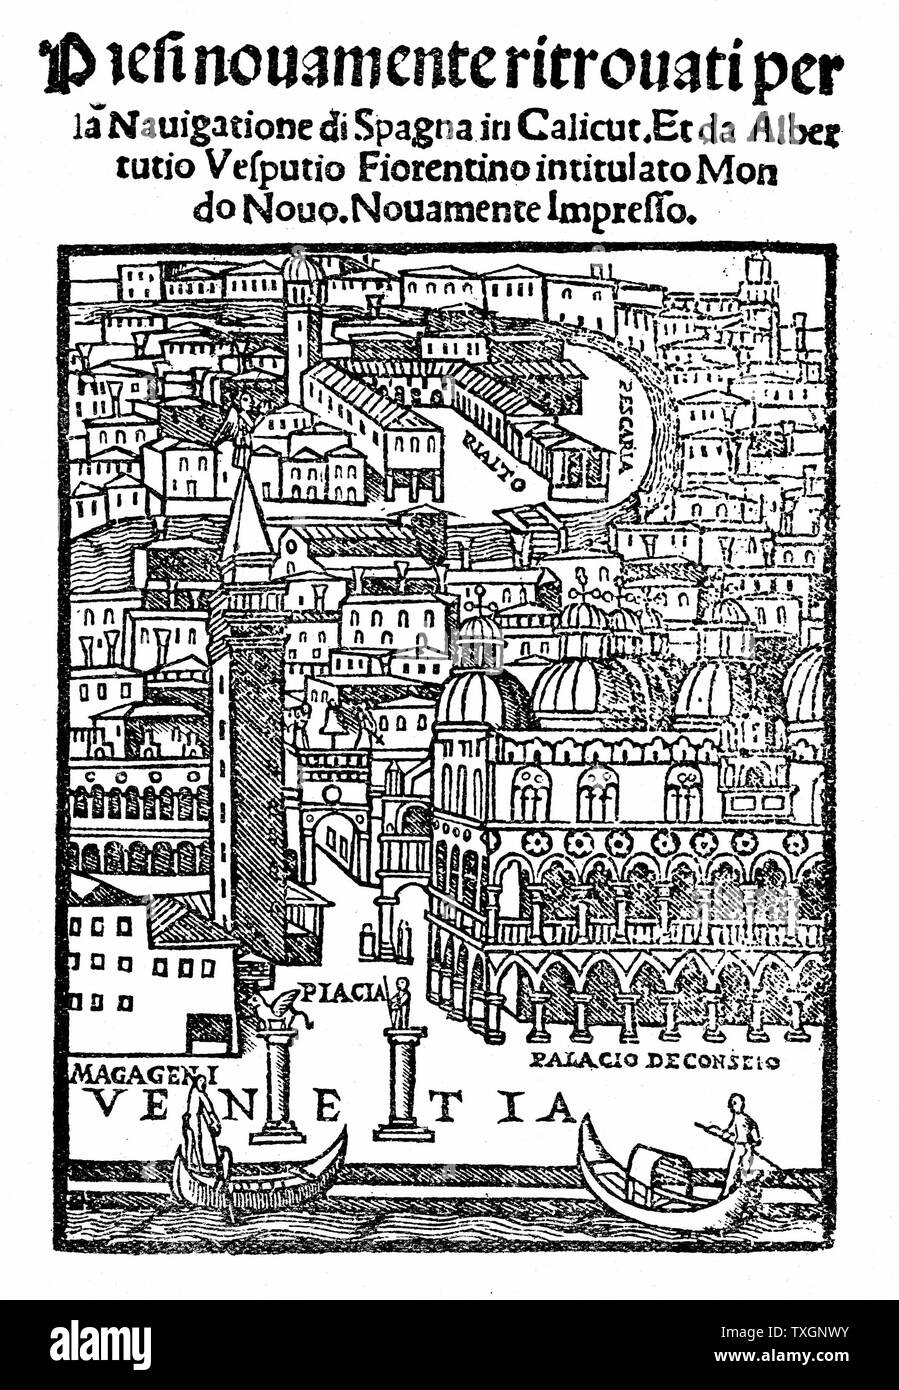 Vue de Venise à partir de la page de titre de Vespucci 'Voyages'. Paternité de l'attribuer à l'une ou l'autre Francan ou Zorzi, cette édition comprend la lettre de Vespucci ot Lorenzo de Medici donnant un compte de ses découvertes. 1521 Gravure sur bois Banque D'Images